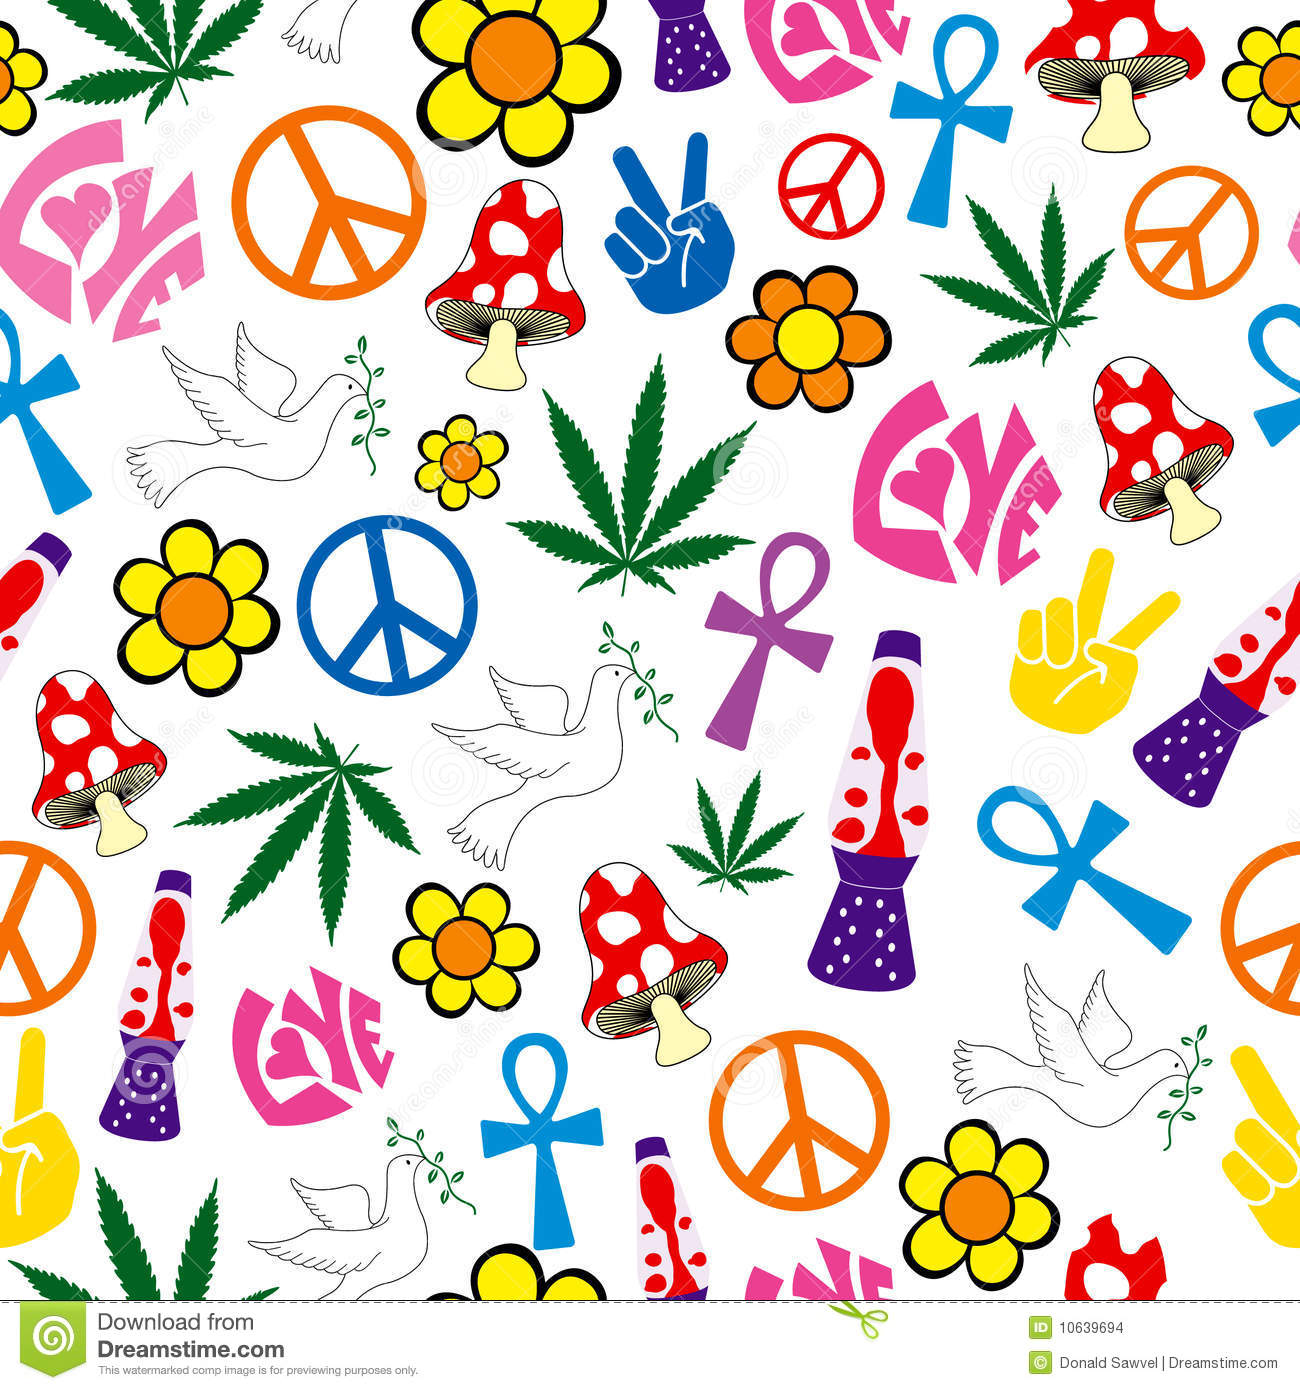 Peace and Love Wallpaper - WallpaperSafari